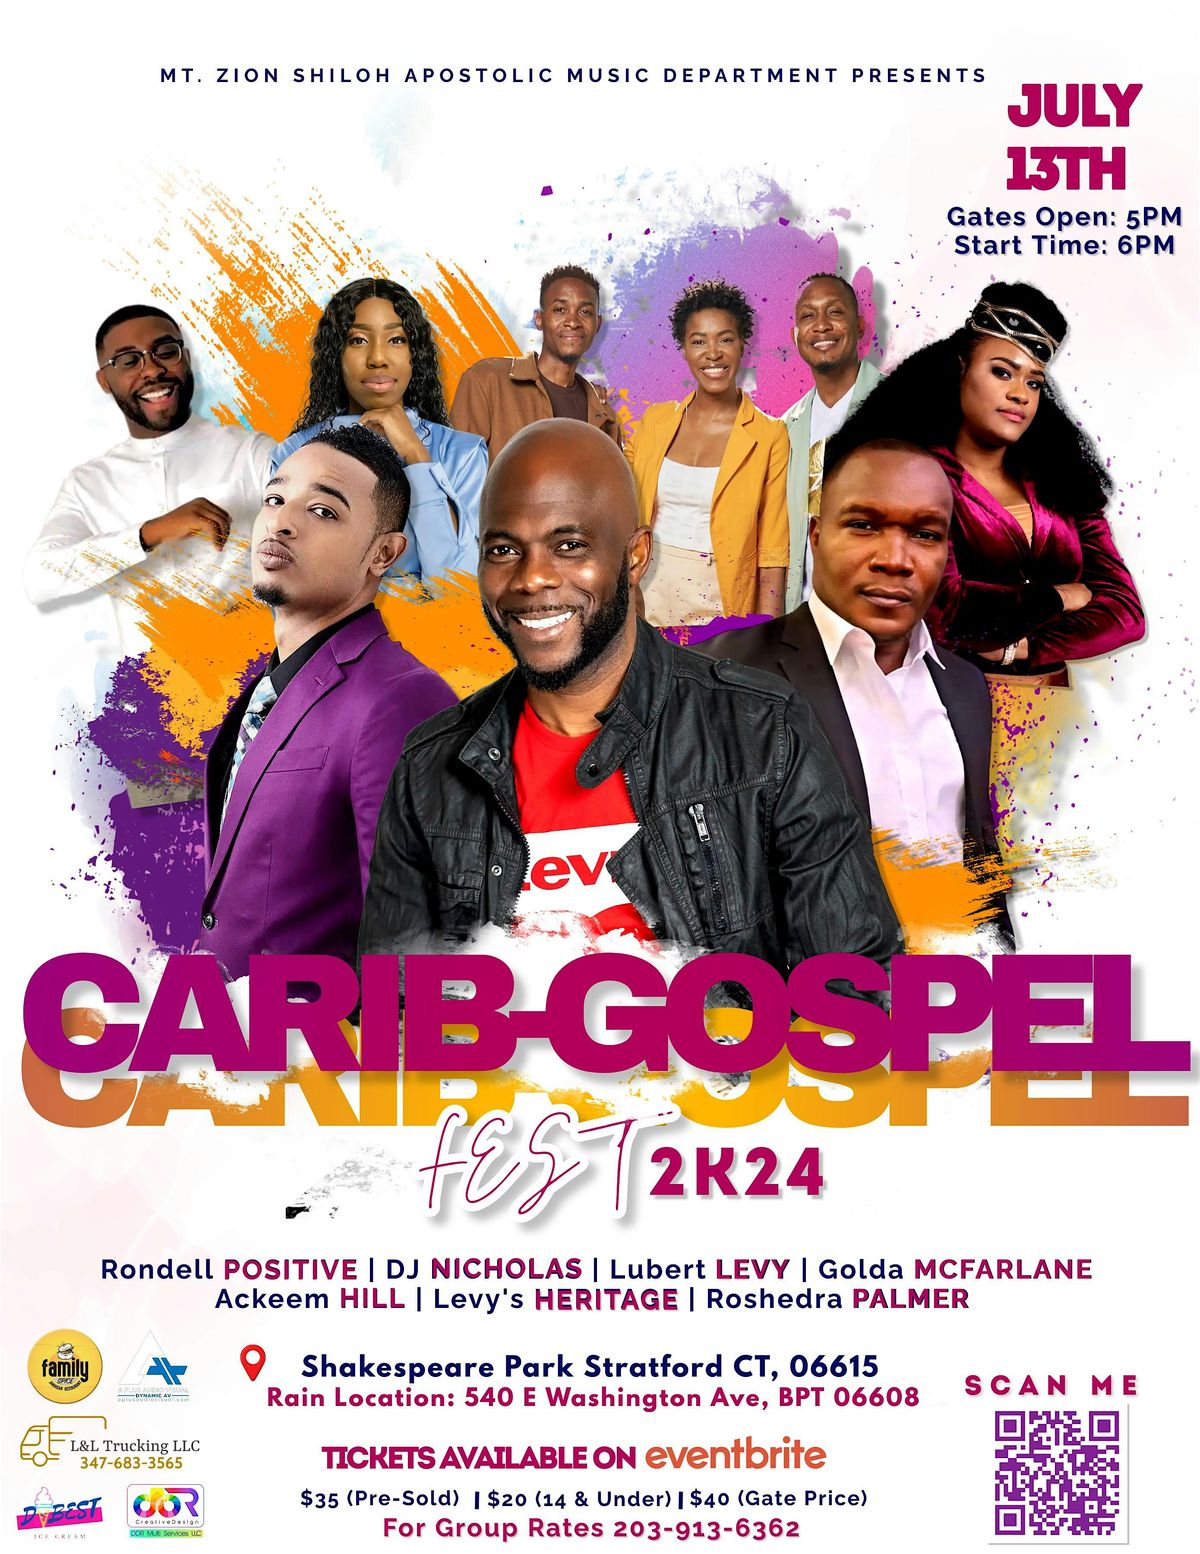 Carib-Gospel Fest 2k24